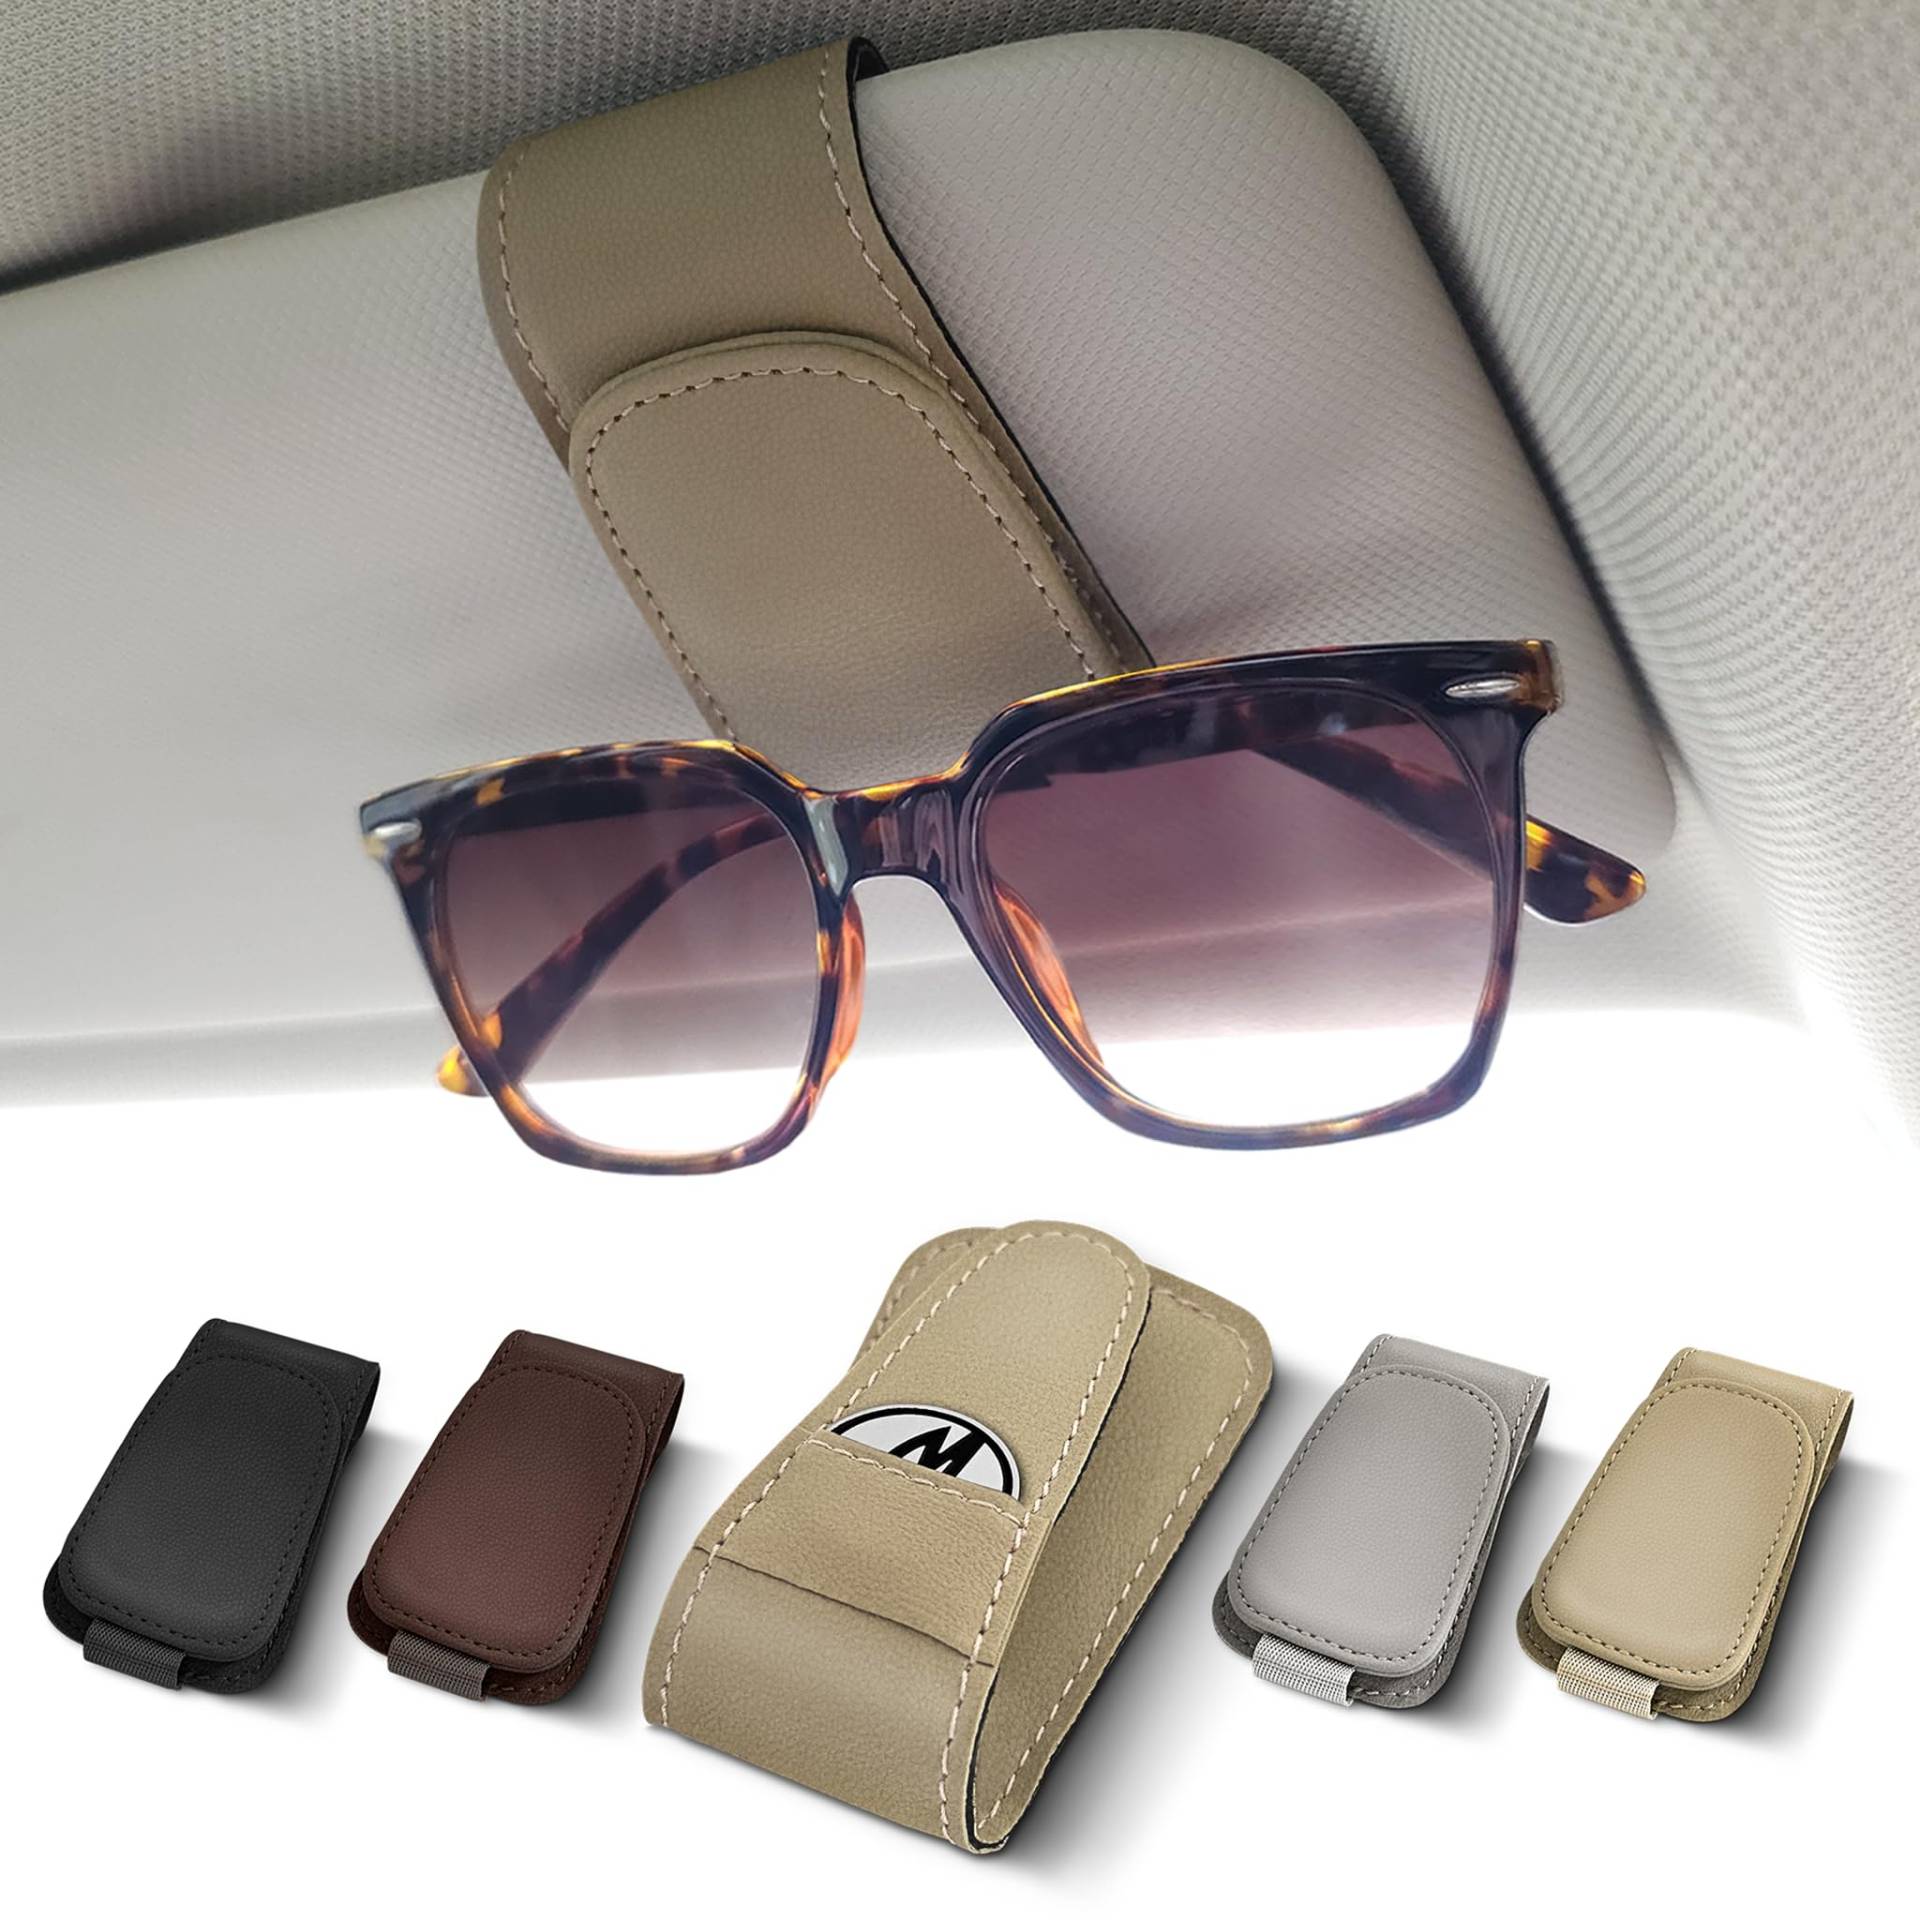 Moterior – Brillenclip Sonnenblende inklusive Einkaufswagenchip – Brillenclip Auto – Sonnenbrillenhalterung Auto von Moterior